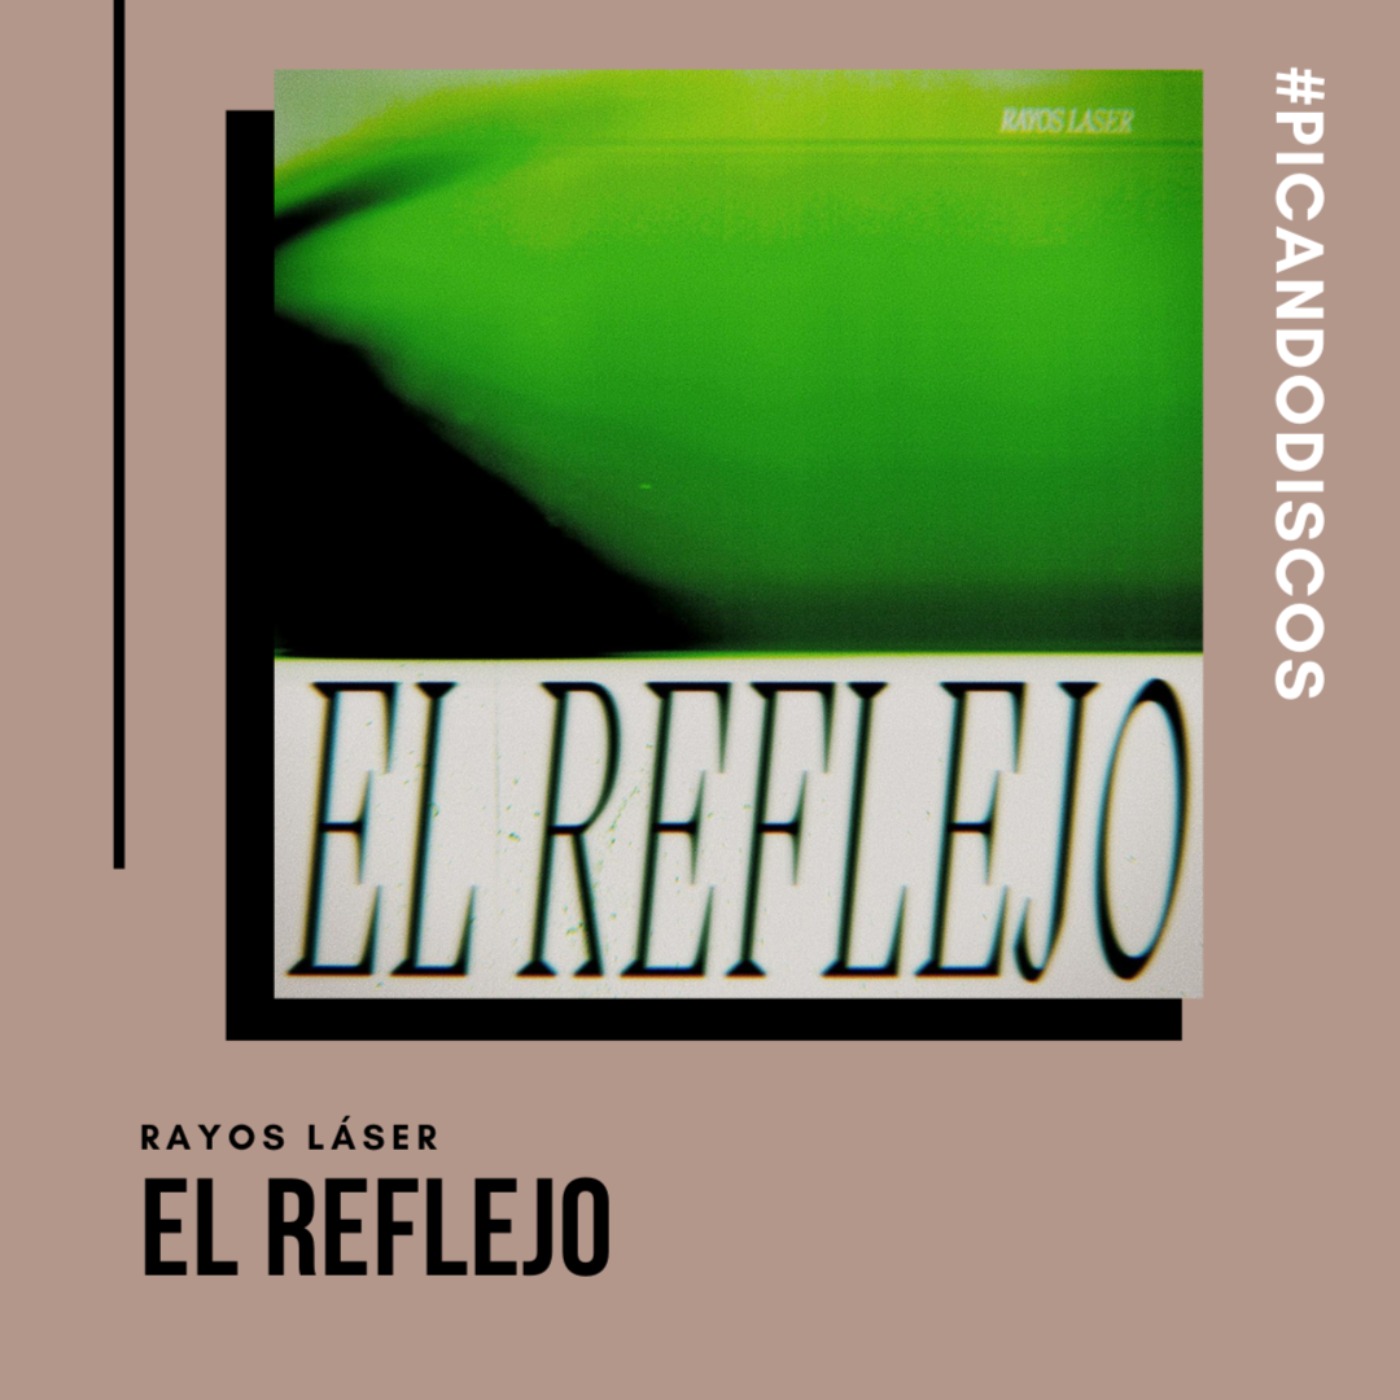 cover art for "El reflejo", Rayos Láser